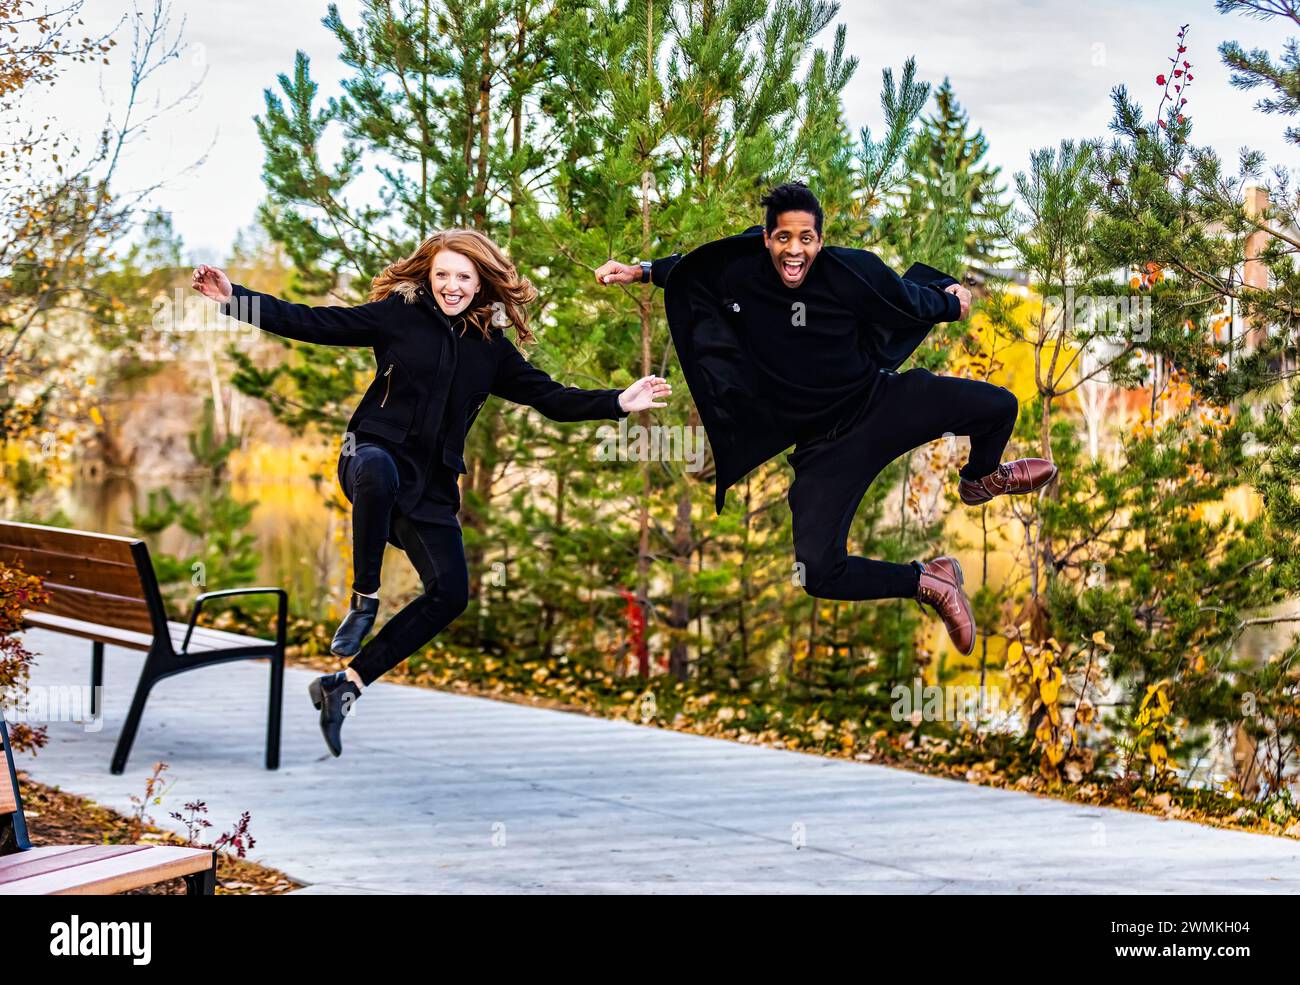 Porträt eines gemischten Rassenpaares, das in die Luft springt, die Kamera anlächelt und während eines Familienausflugs im Herbst in einem ci wertvolle Zeit miteinander verbringt... Stockfoto